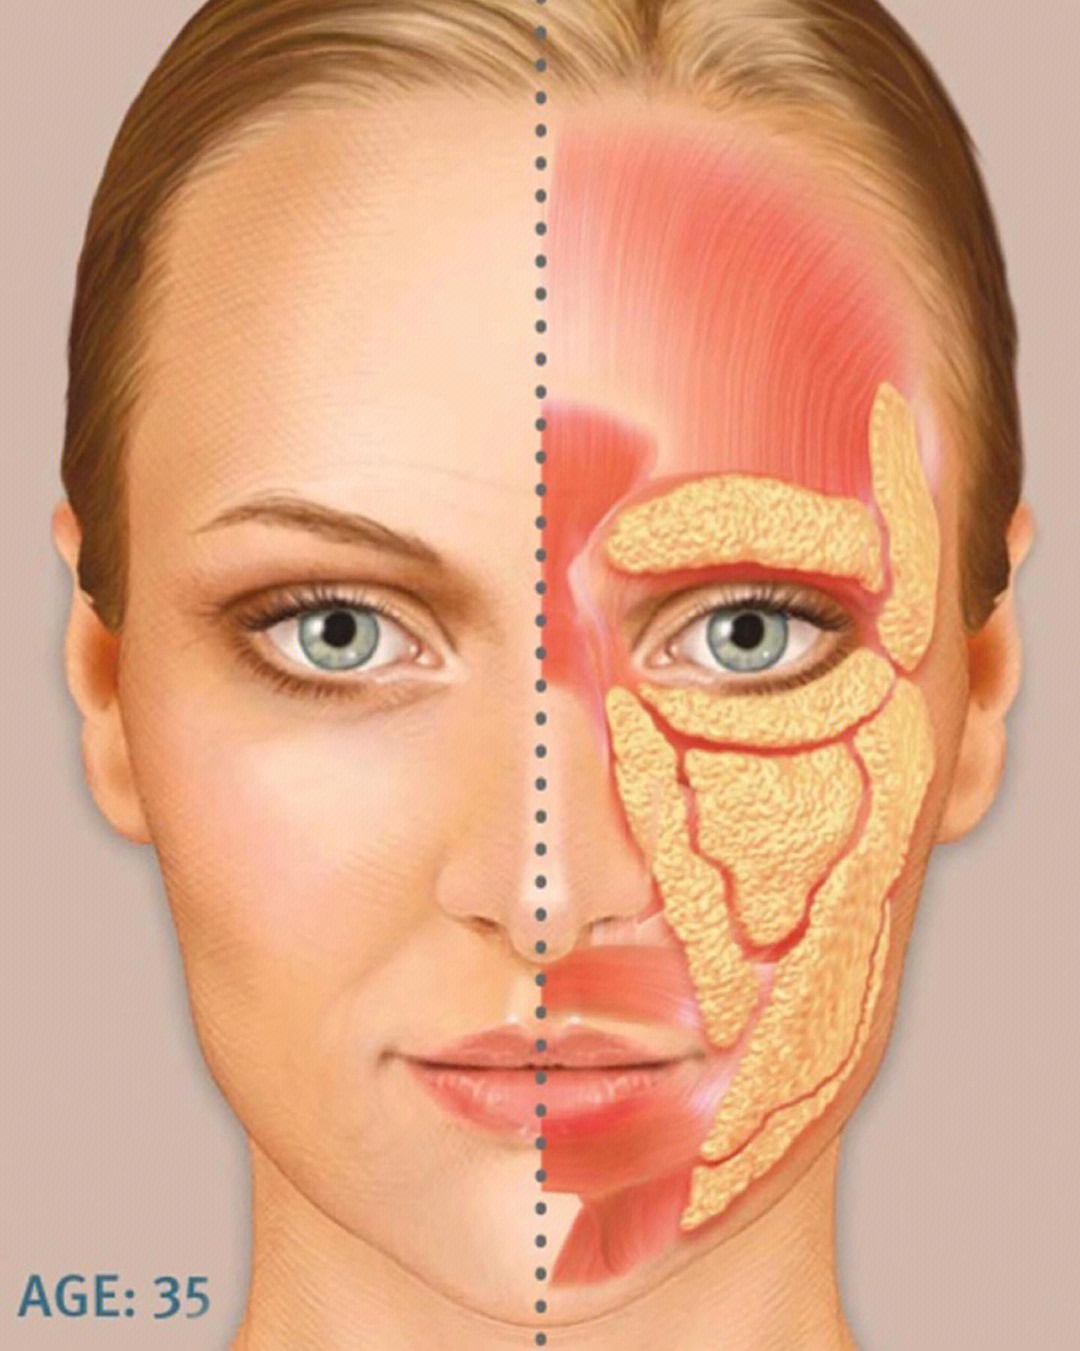 面部骨骼衰老的过程图图片